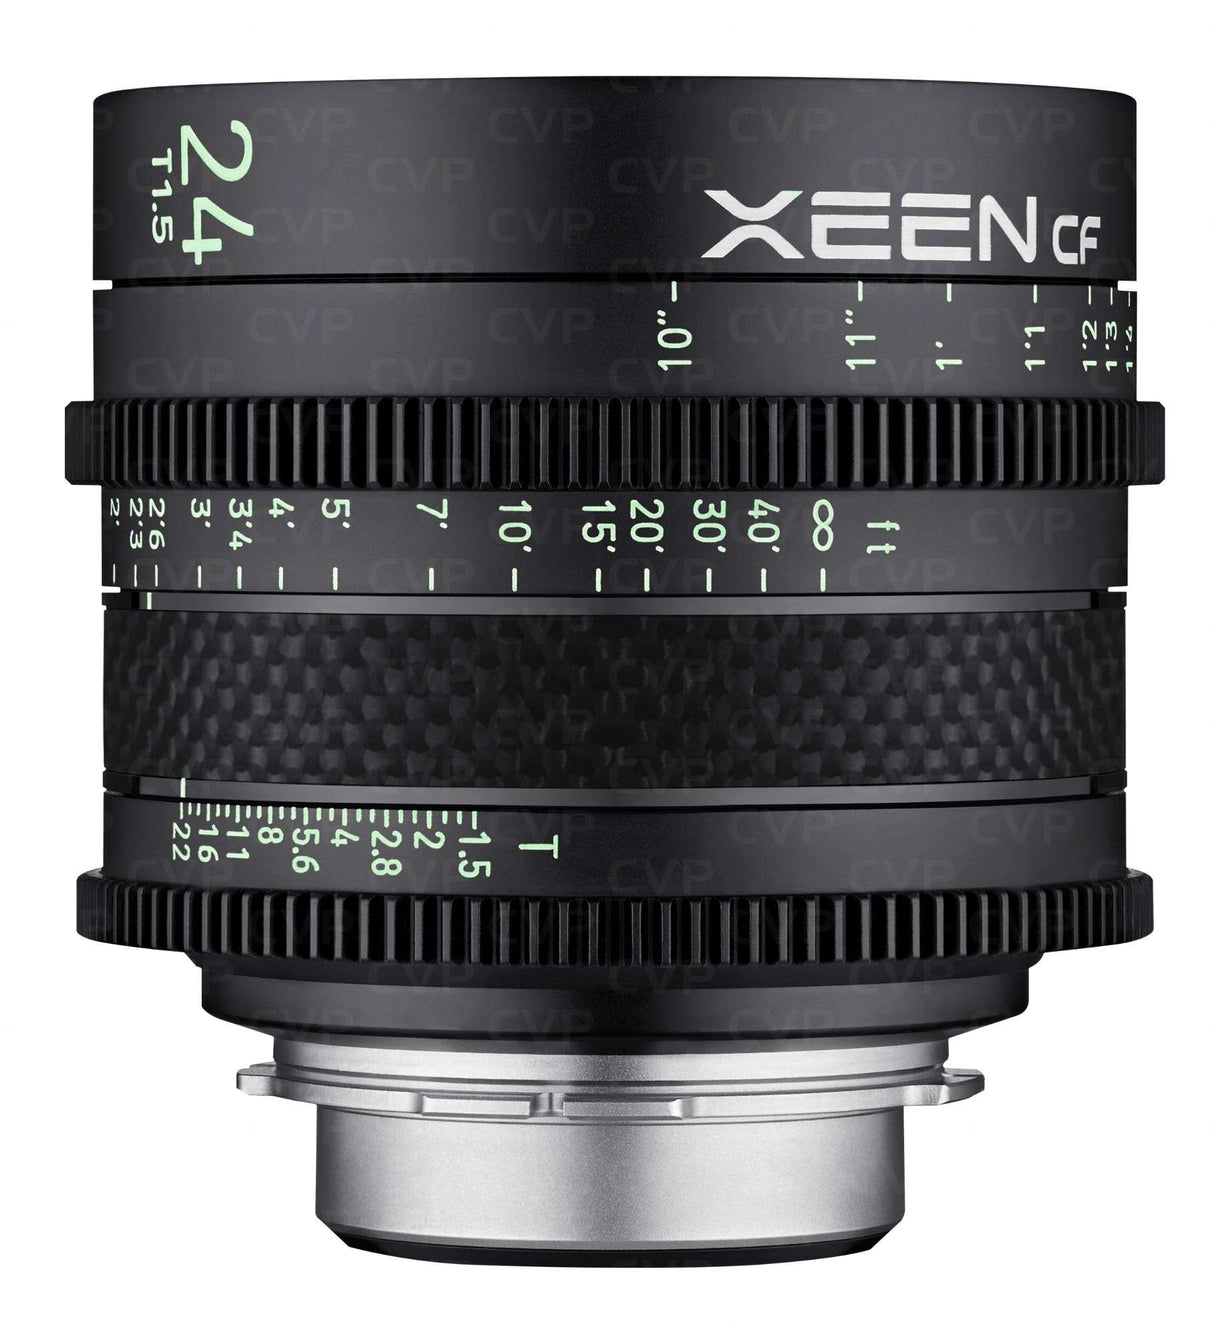 XEEN CF 24mm T1.5 - échelle en METRE pour monture PL